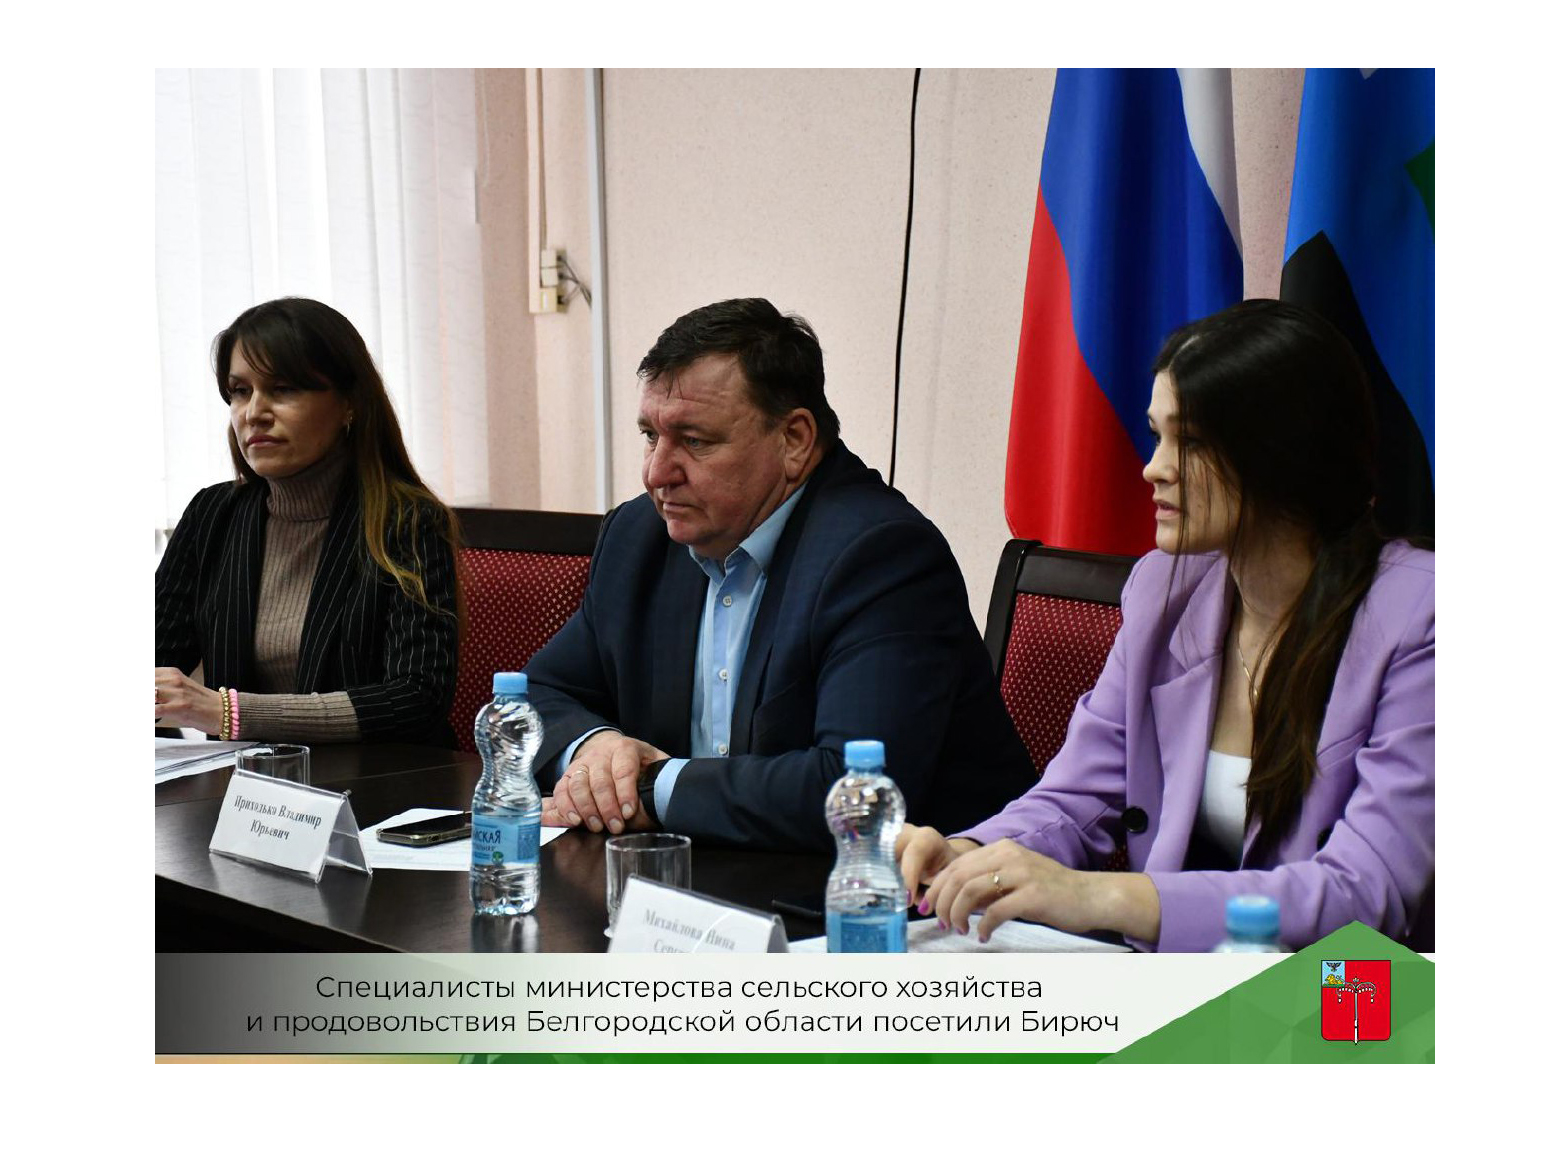 Красногвардейцы, воспользовавшиеся господдержкой, получили консультацию специалистов Министерства сельского хозяйства и продовольствия Белгородской области.